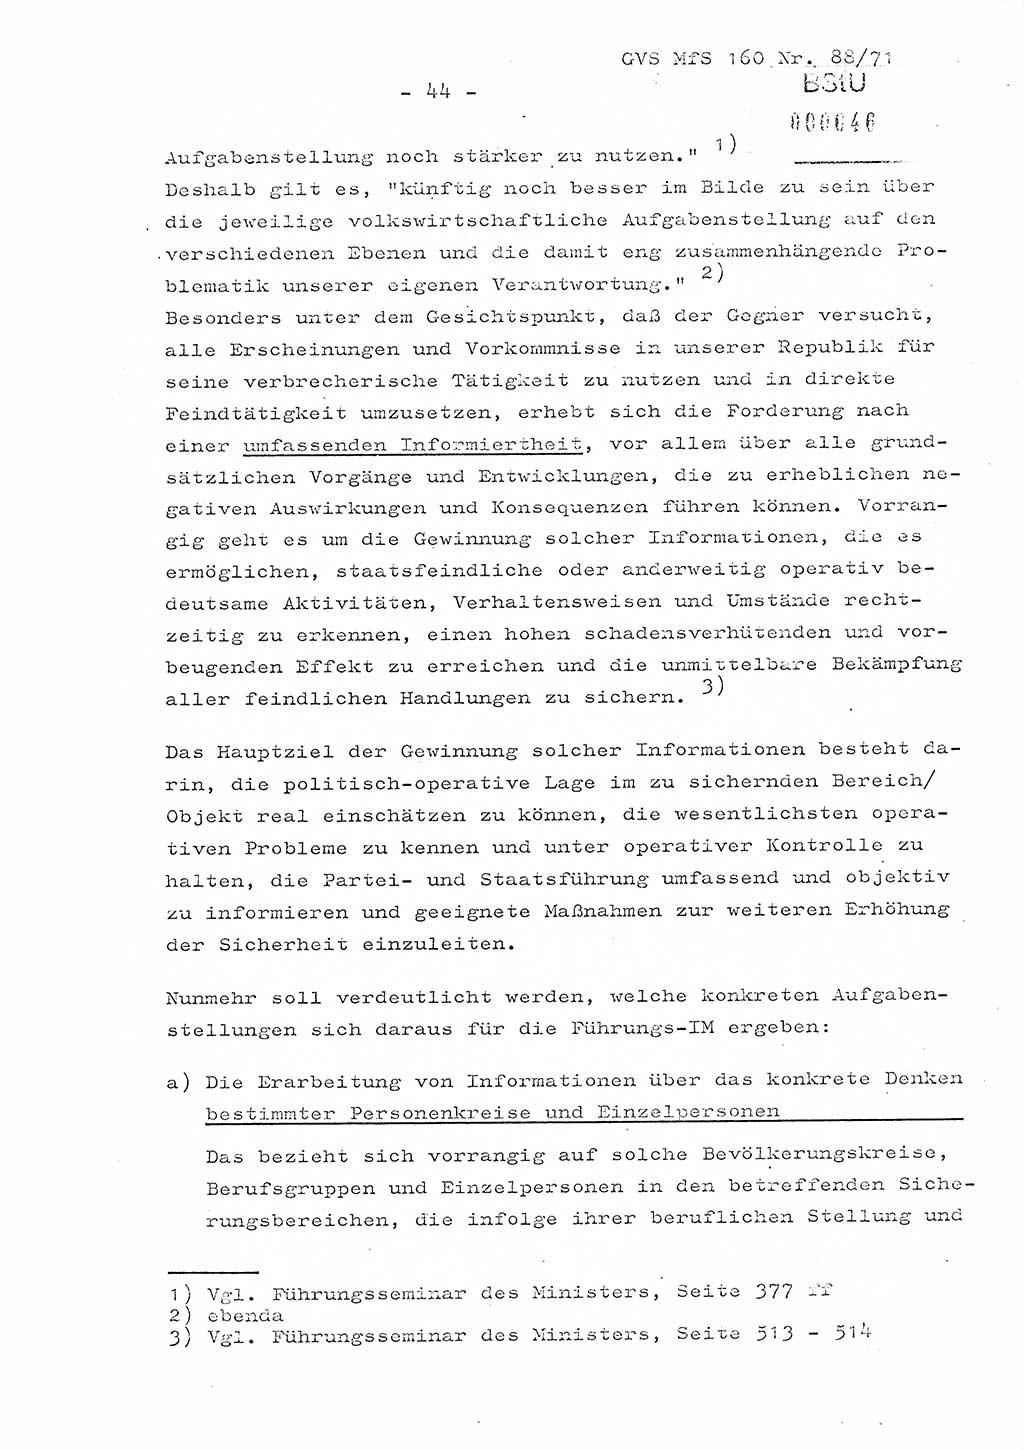 Dissertation Oberstleutnant Josef Schwarz (BV Schwerin), Major Fritz Amm (JHS), Hauptmann Peter Gräßler (JHS), Ministerium für Staatssicherheit (MfS) [Deutsche Demokratische Republik (DDR)], Juristische Hochschule (JHS), Geheime Verschlußsache (GVS) 160-88/71, Potsdam 1972, Seite 44 (Diss. MfS DDR JHS GVS 160-88/71 1972, S. 44)